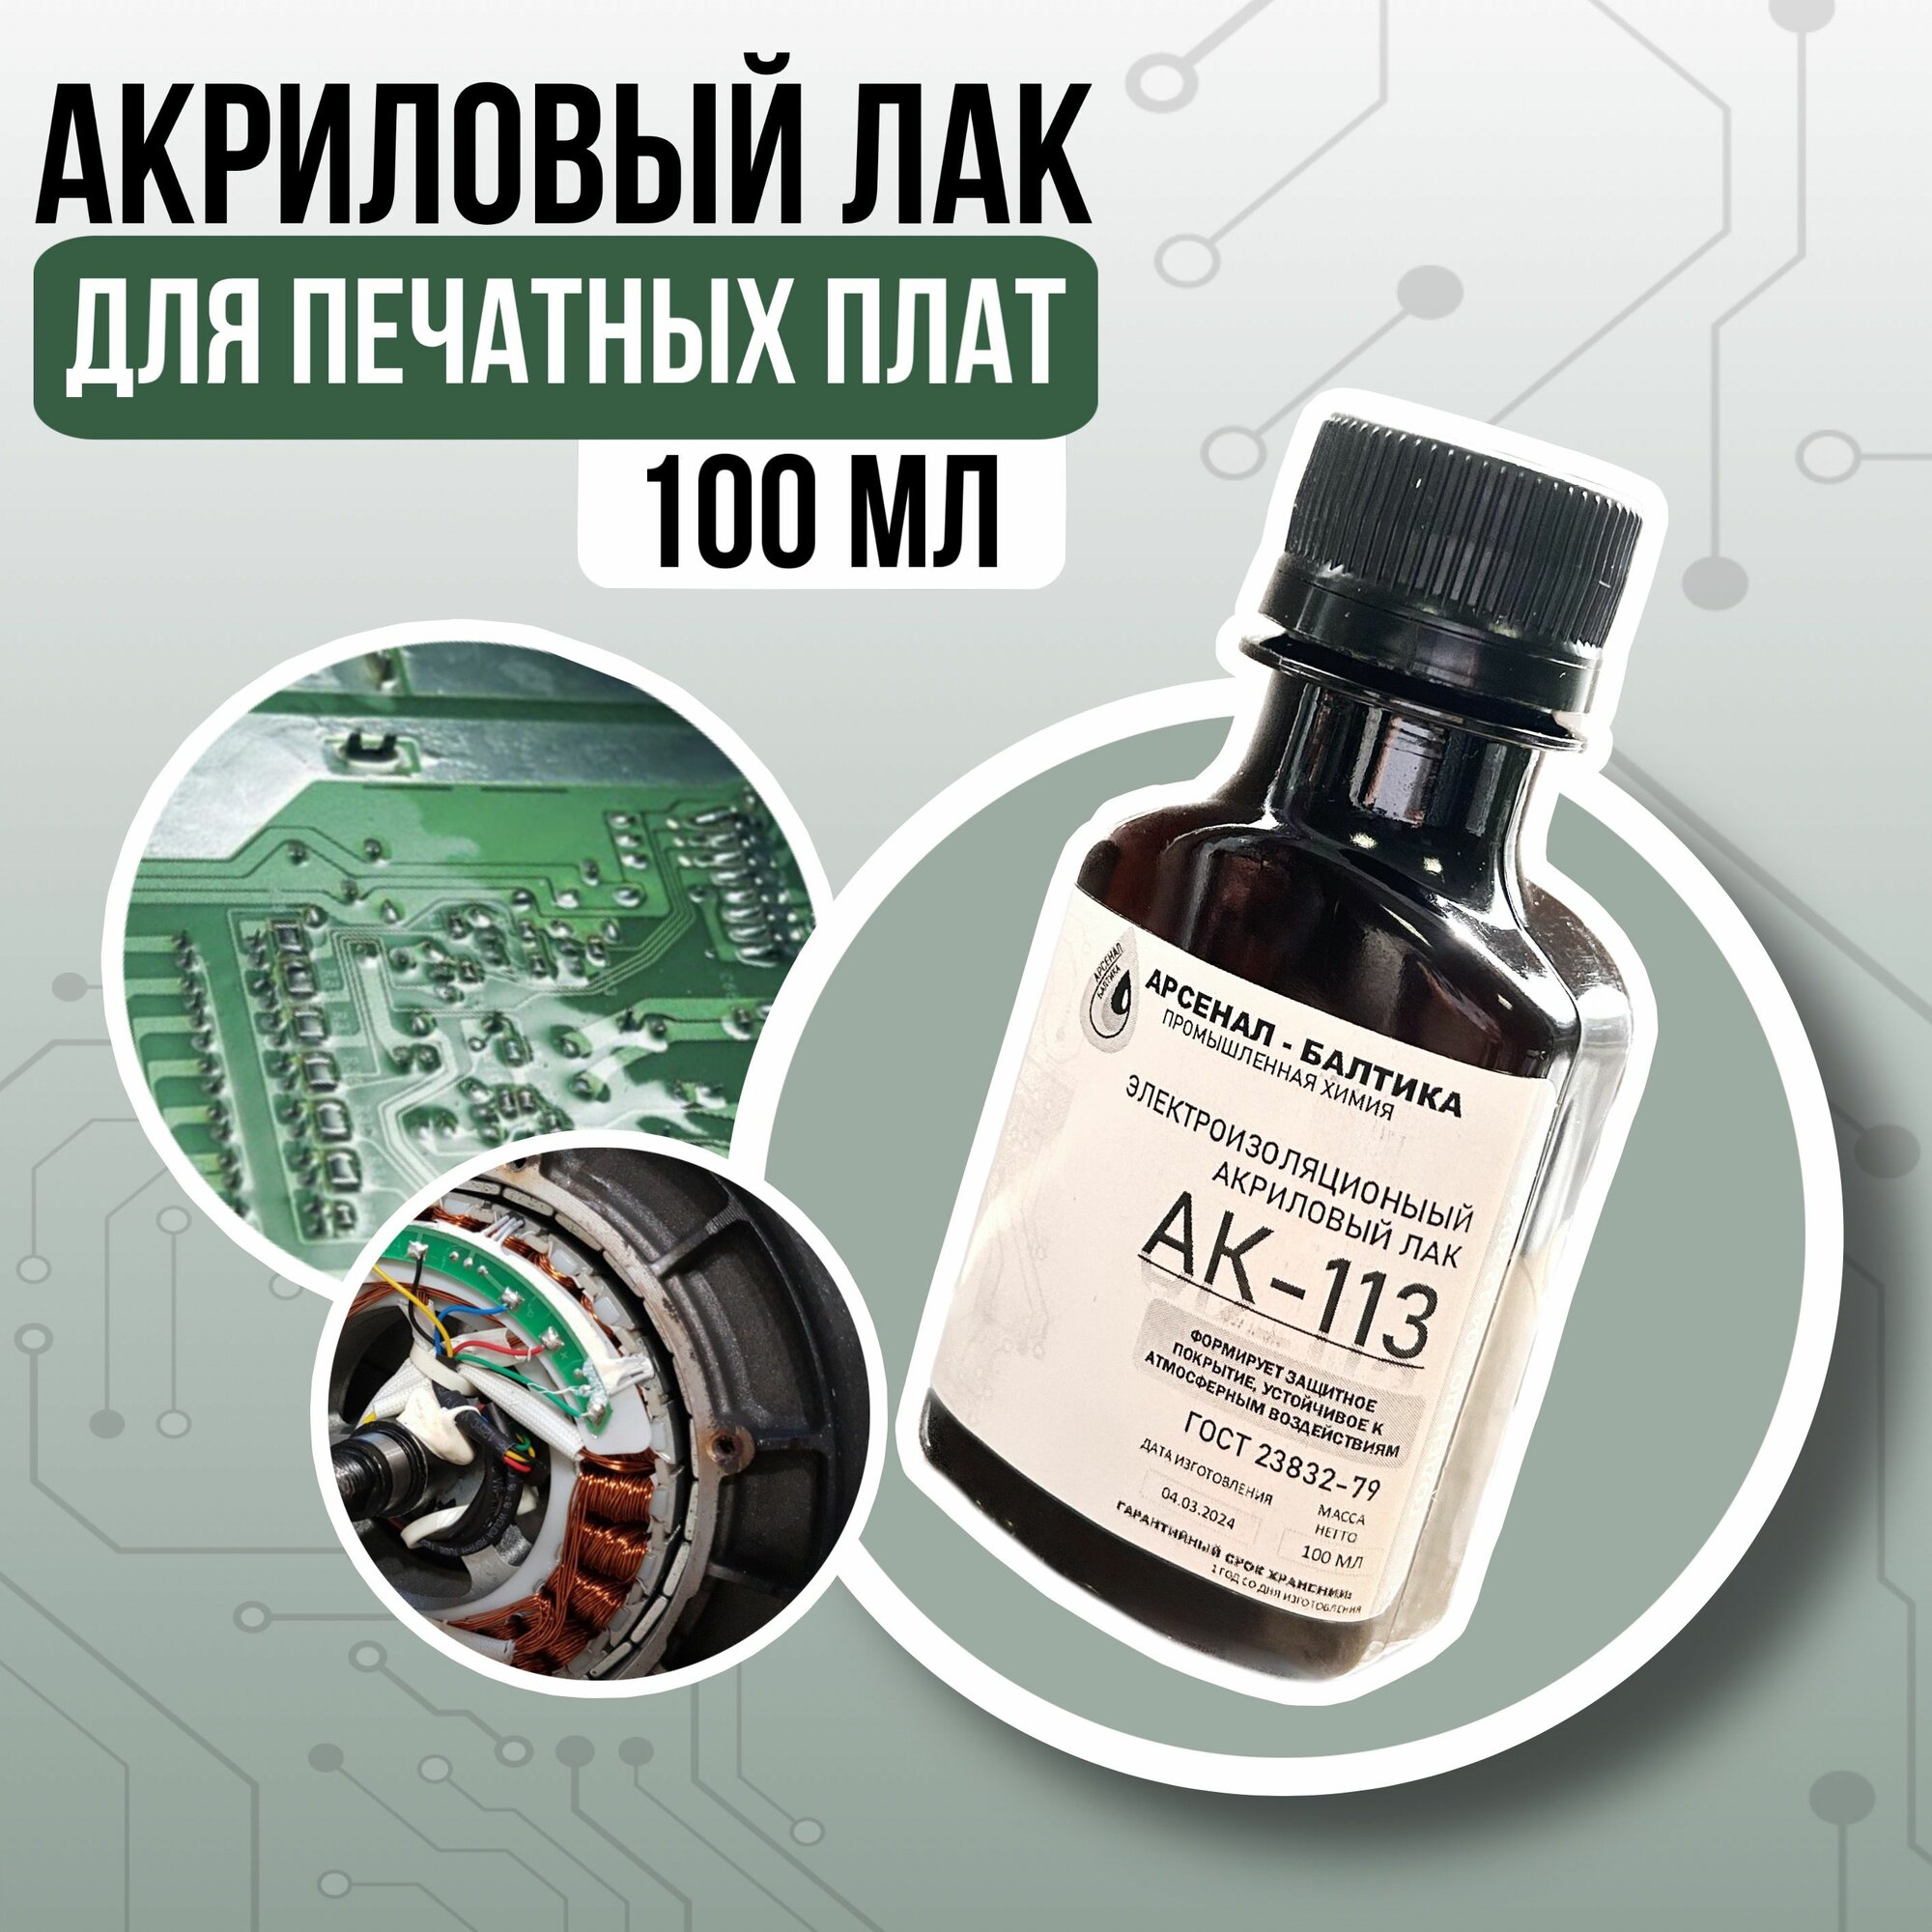 Электроизоляционный акриловый лак для печатных плат АК-113 (100мл)